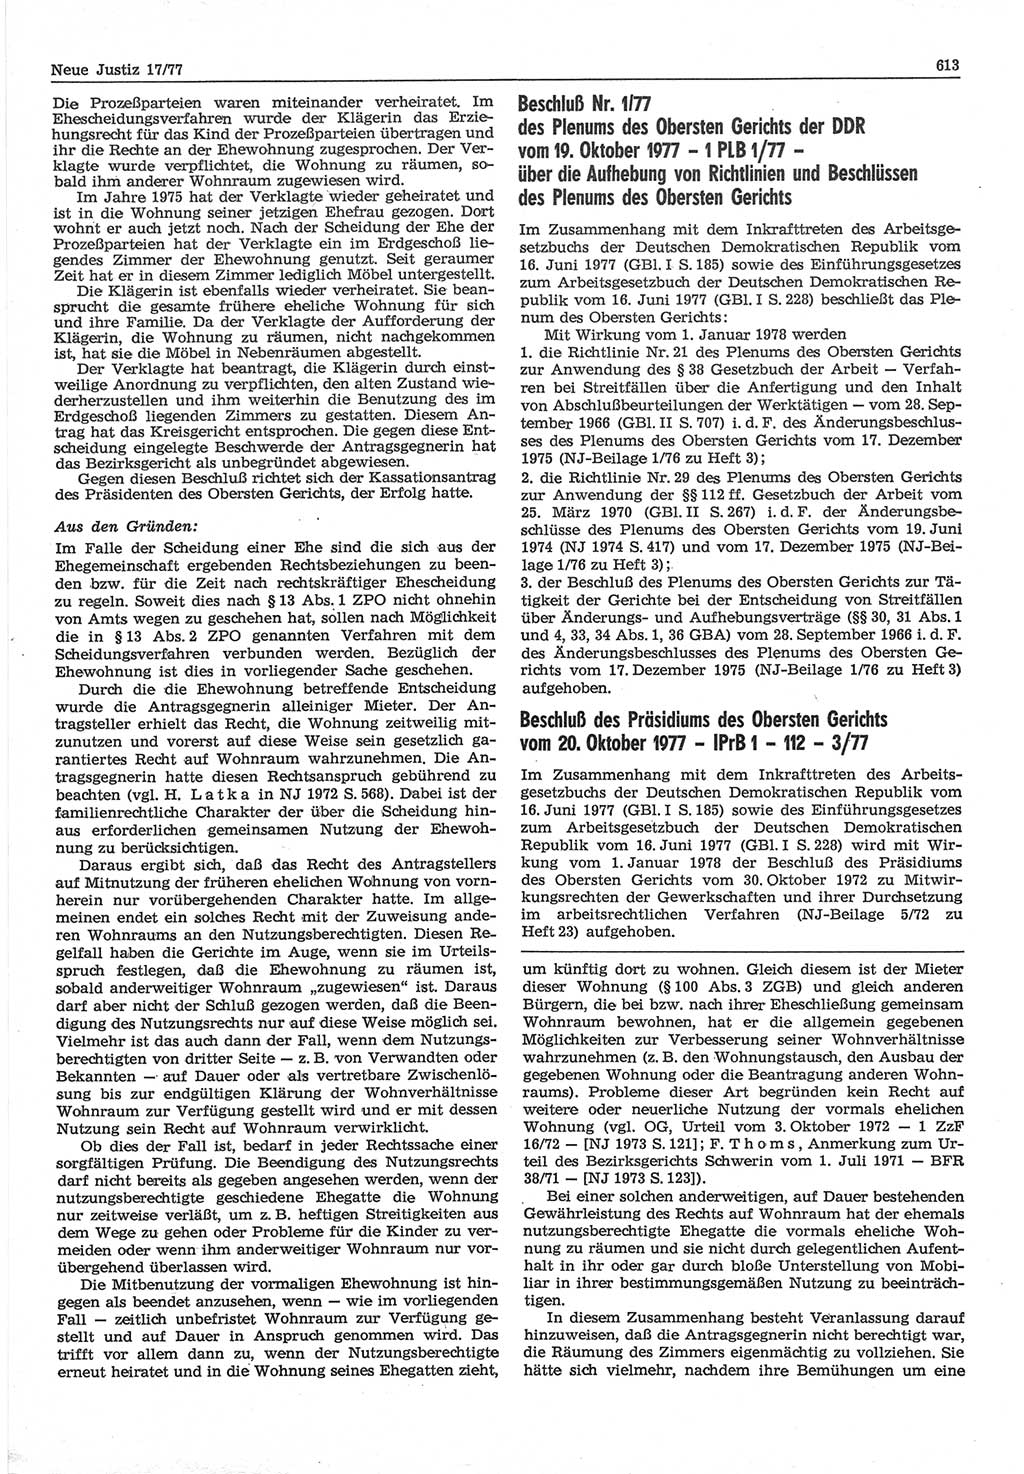 Neue Justiz (NJ), Zeitschrift für Recht und Rechtswissenschaft-Zeitschrift, sozialistisches Recht und Gesetzlichkeit, 31. Jahrgang 1977, Seite 613 (NJ DDR 1977, S. 613)